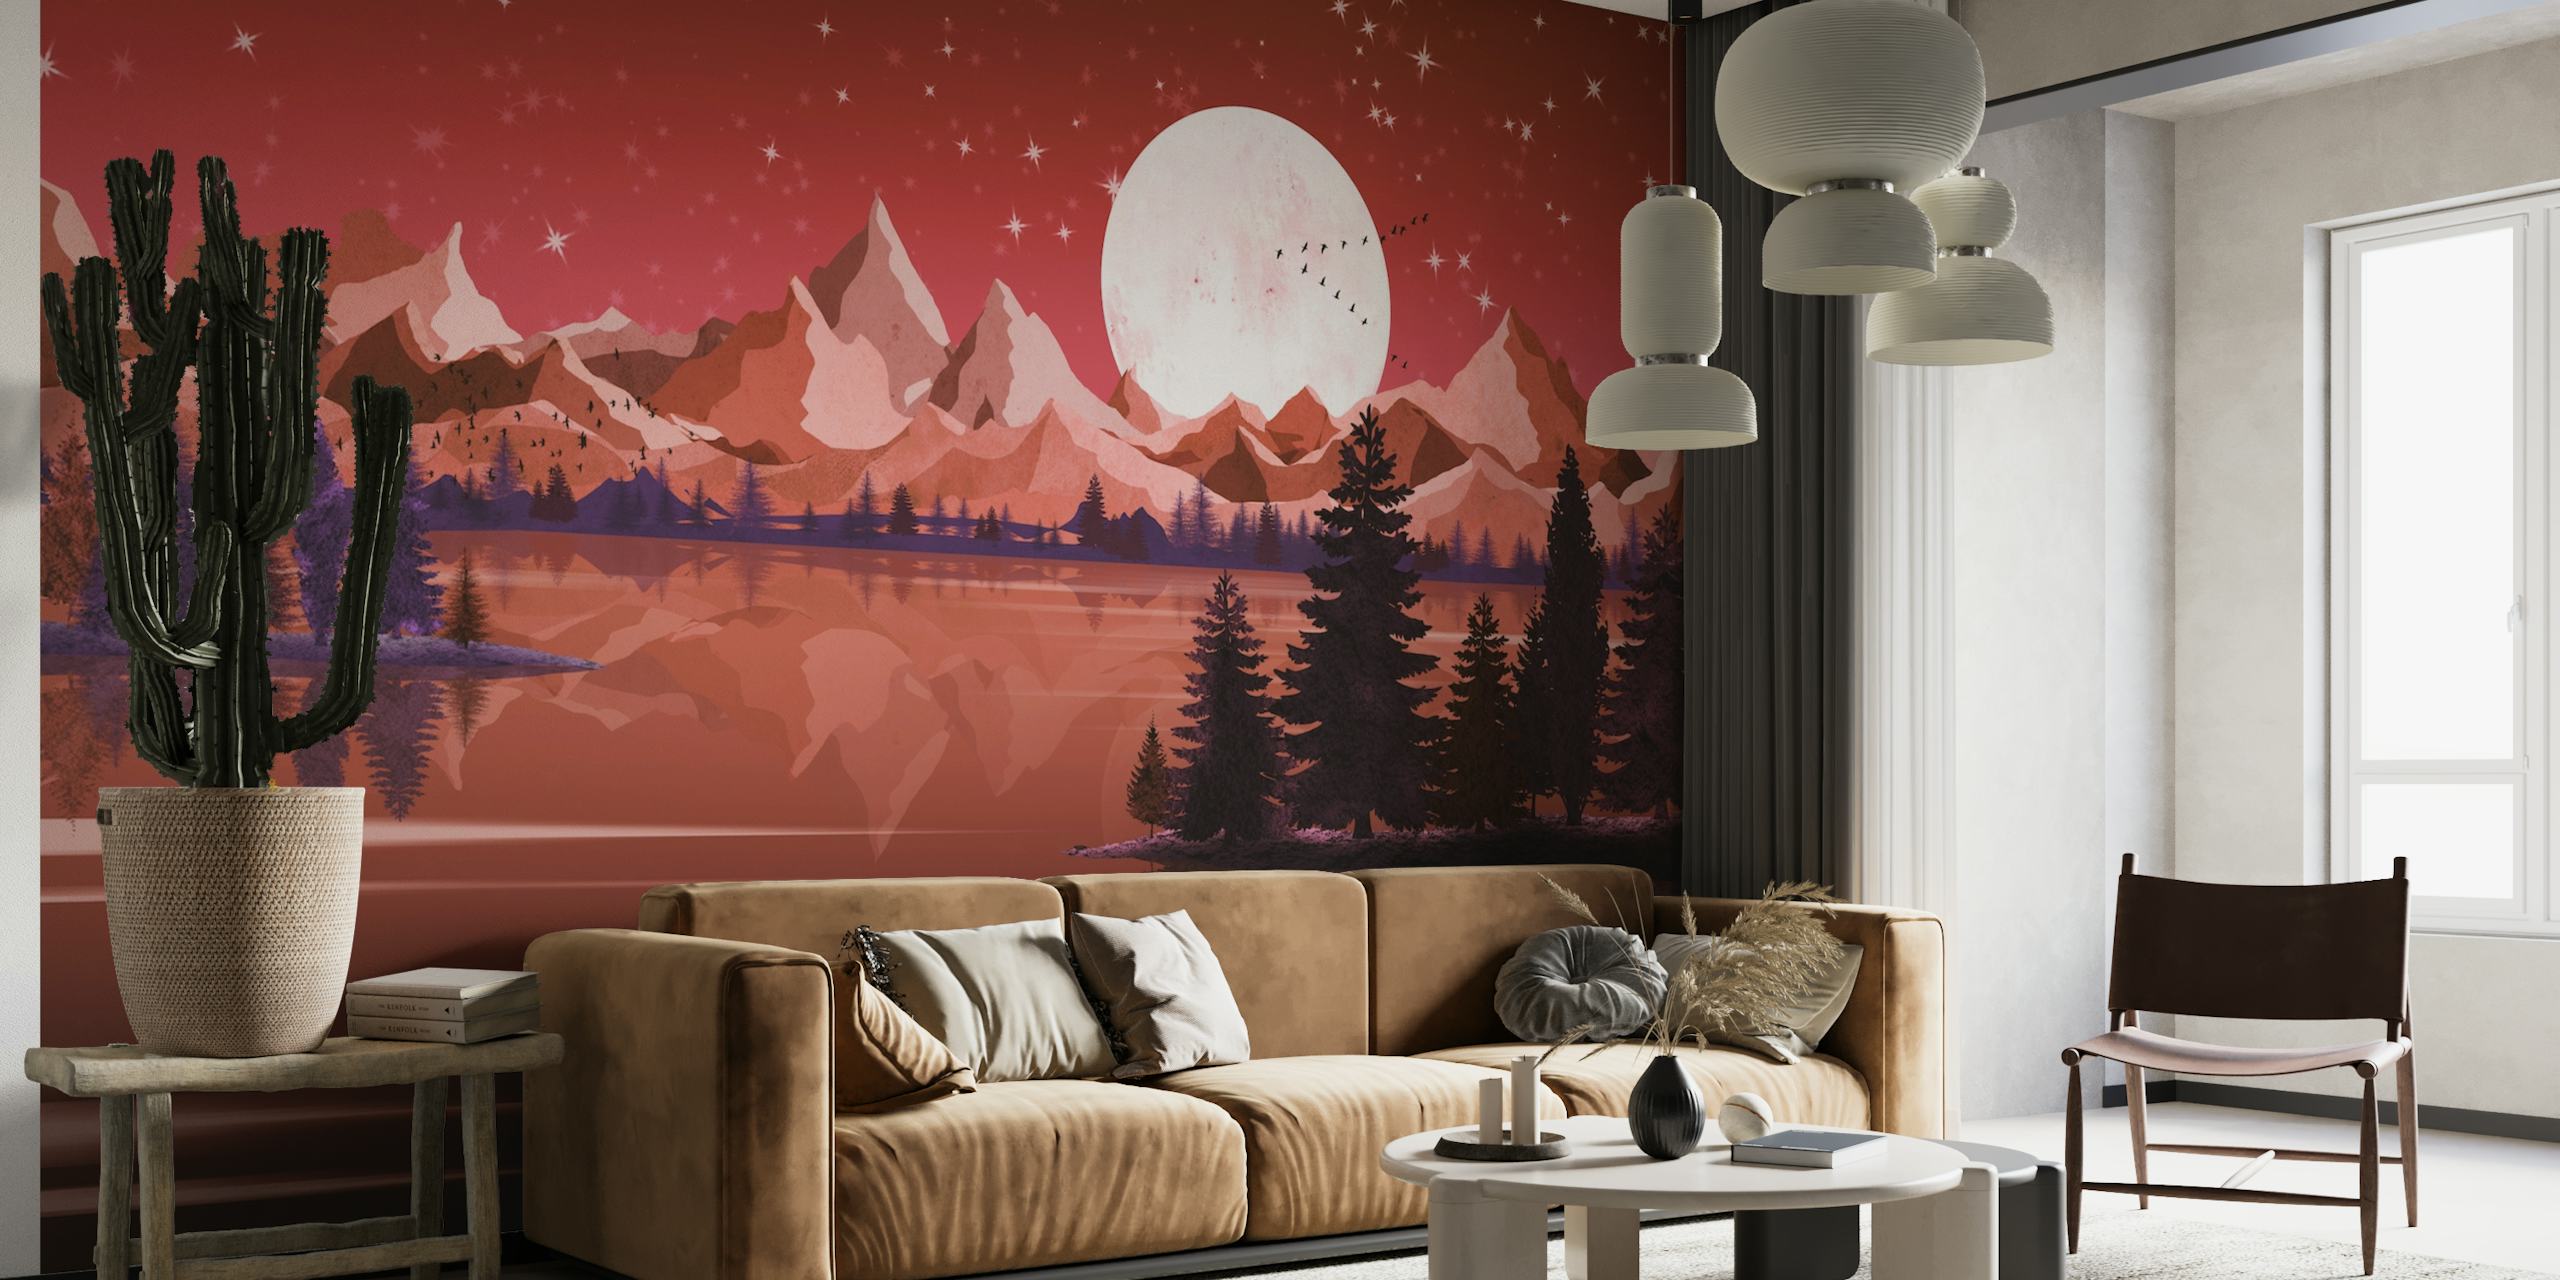 The Red Moonlight wallpaper